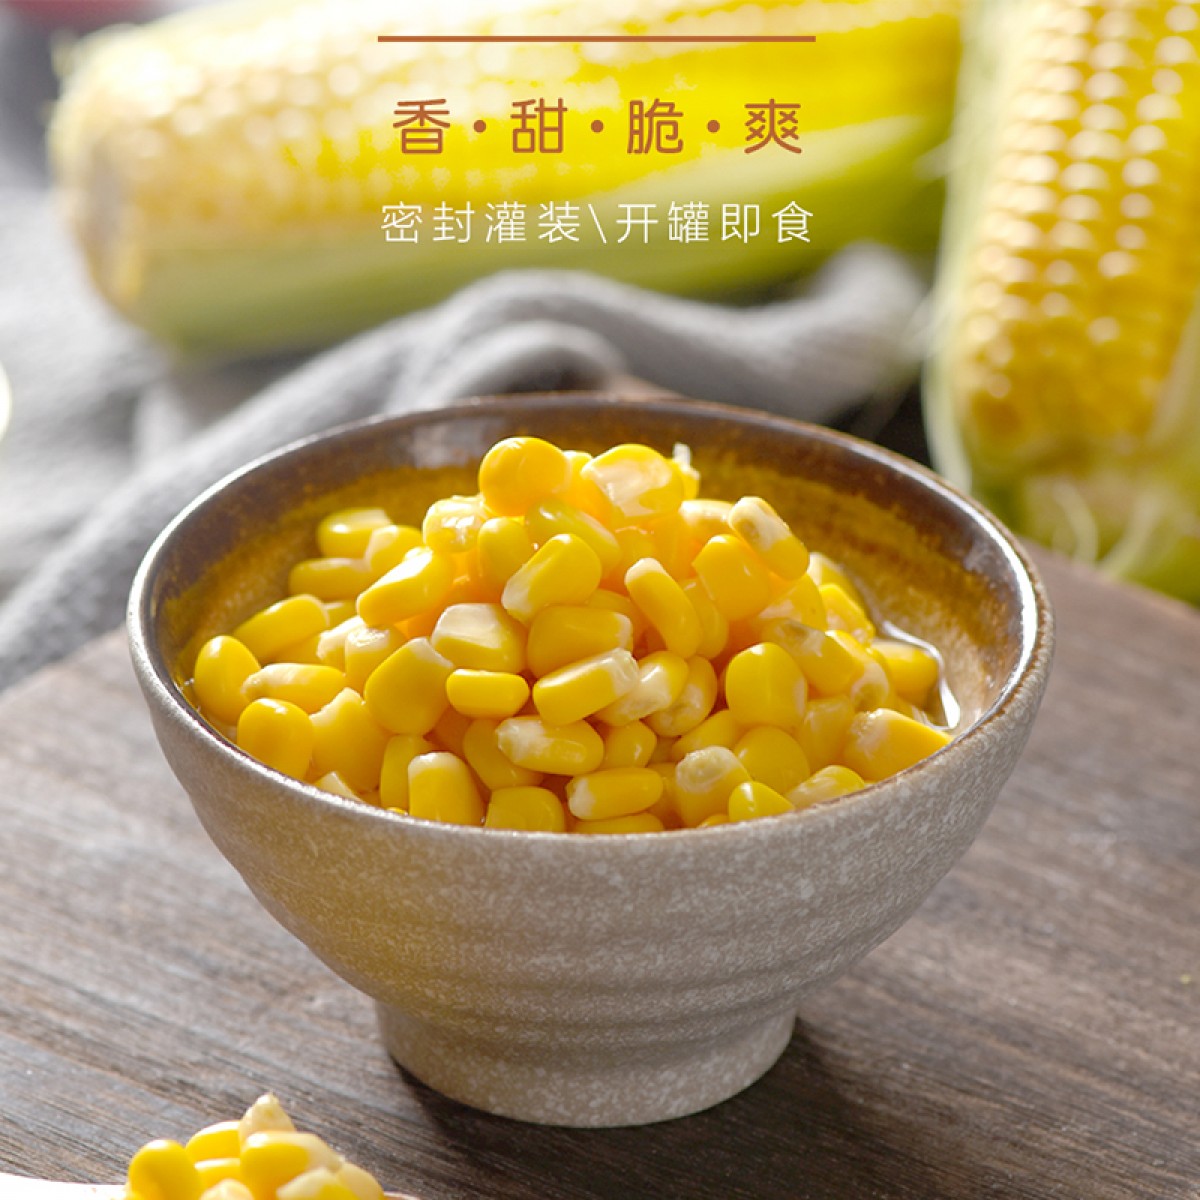 美戈新疆罐头食品甜玉米粒罐头425g/罐×24罐